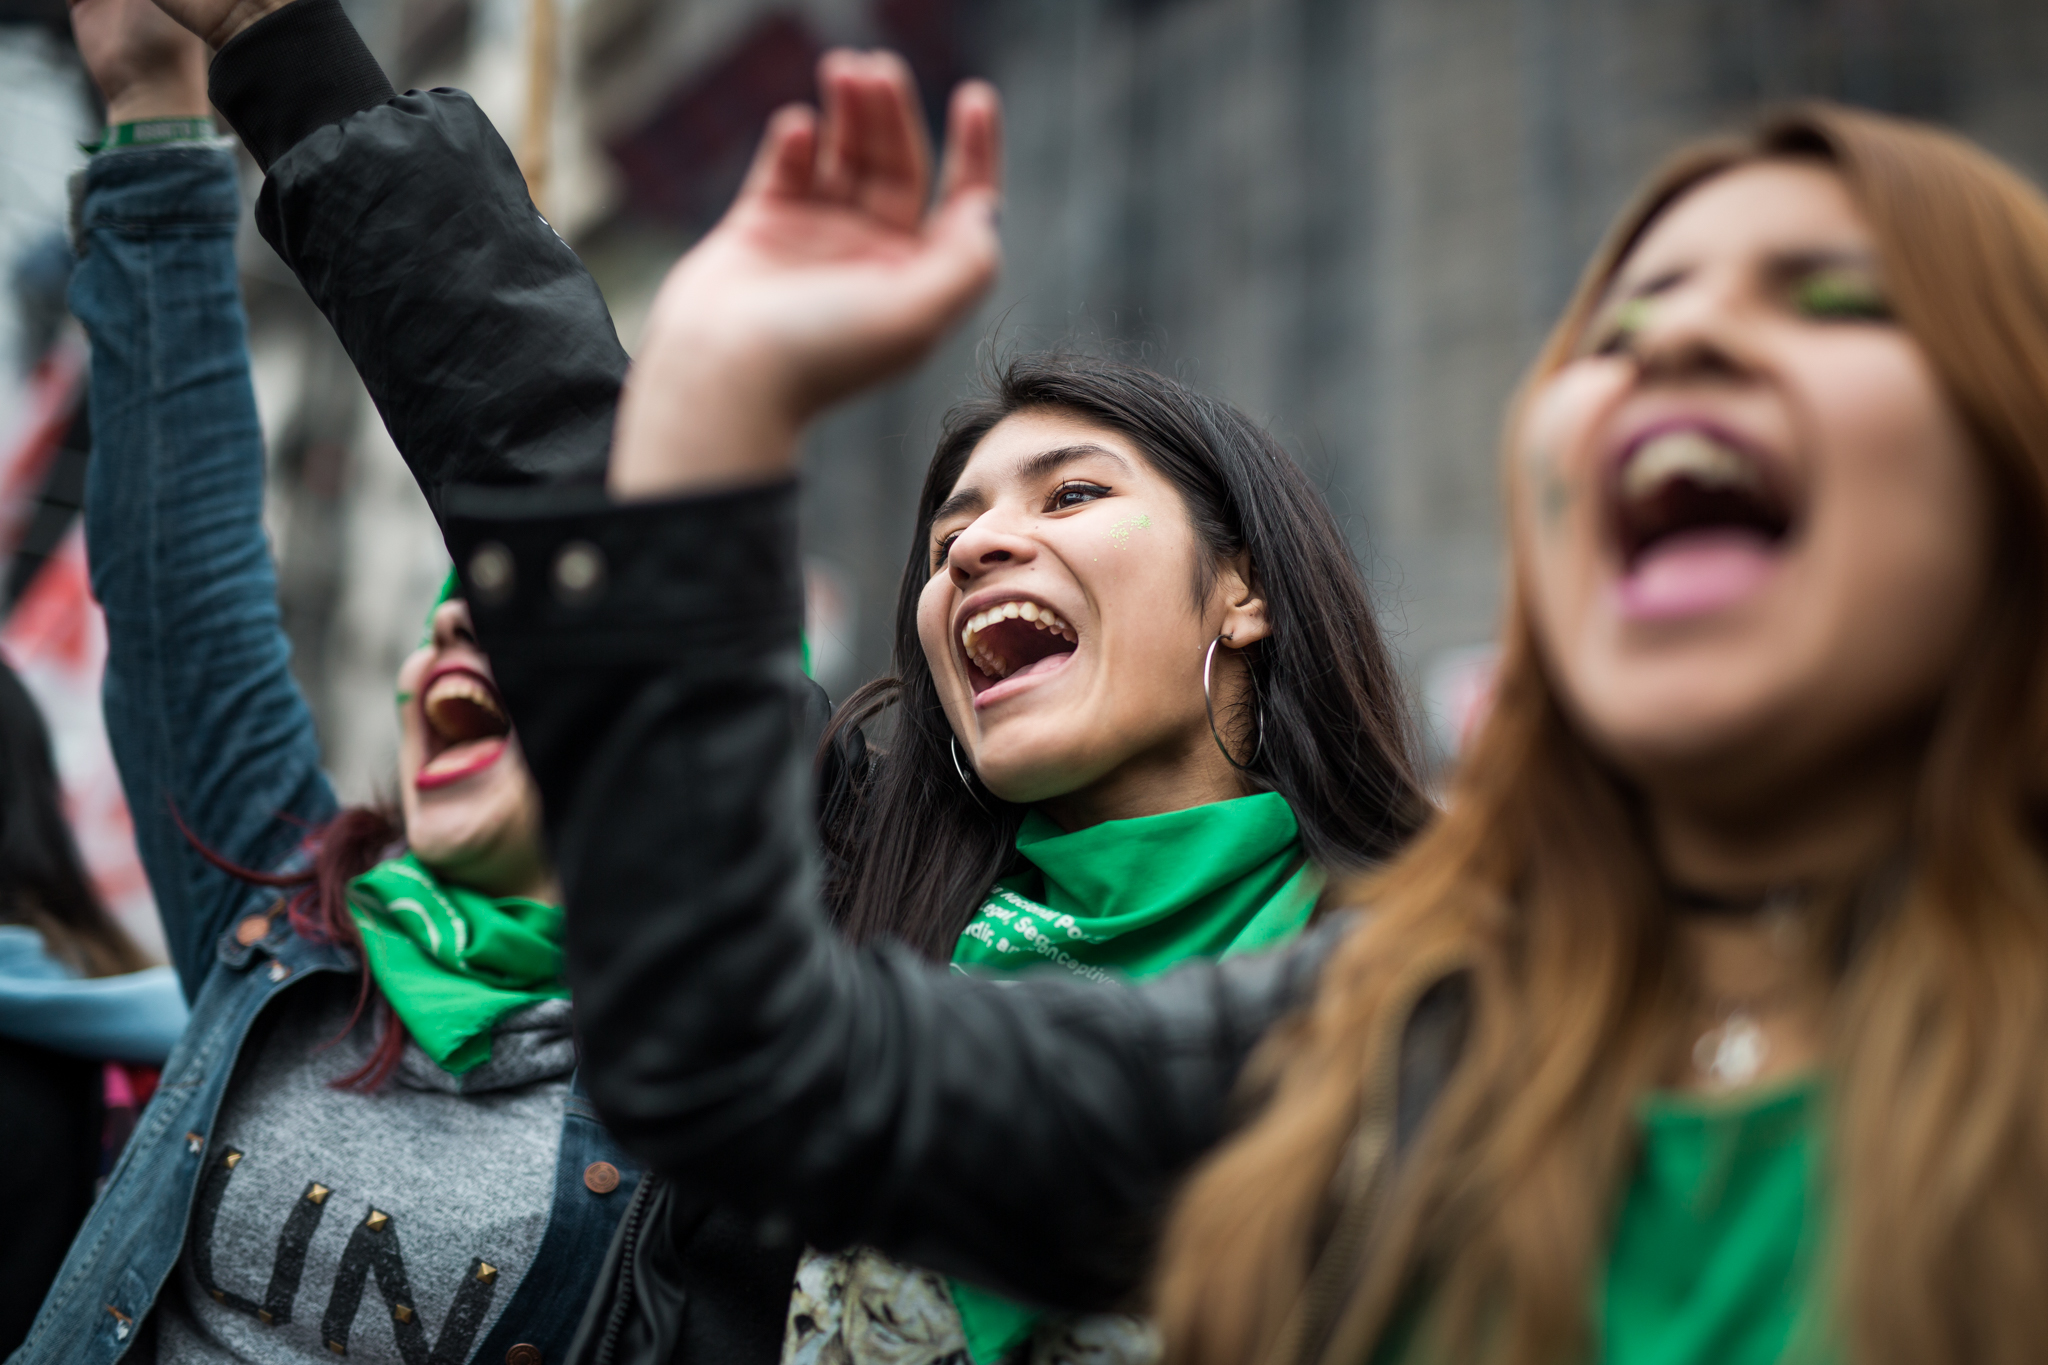 La revolución verde: la calle a todo ritmo por el #AbortoLegal